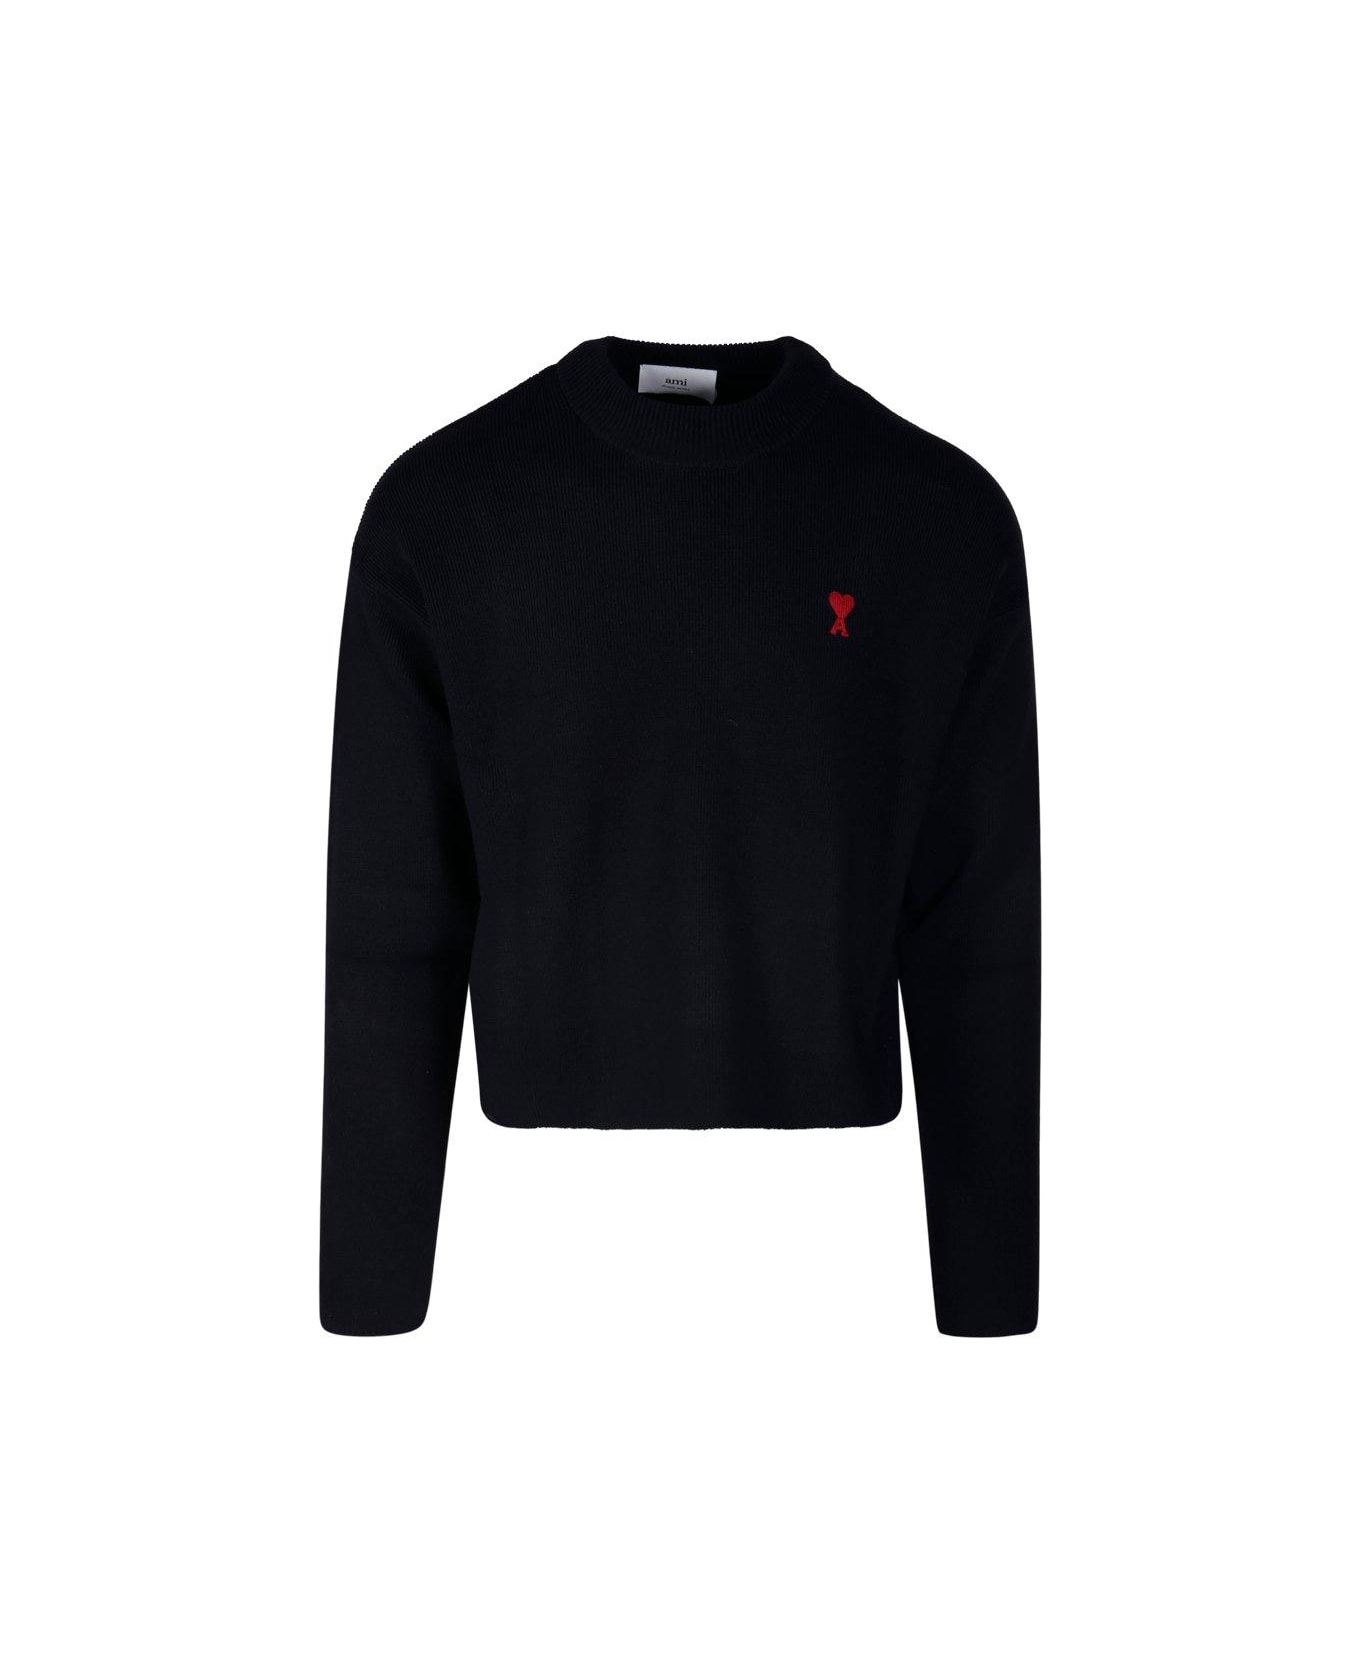 Ami Alexandre Mattiussi Logo Embroidered Knit Sweater - Black